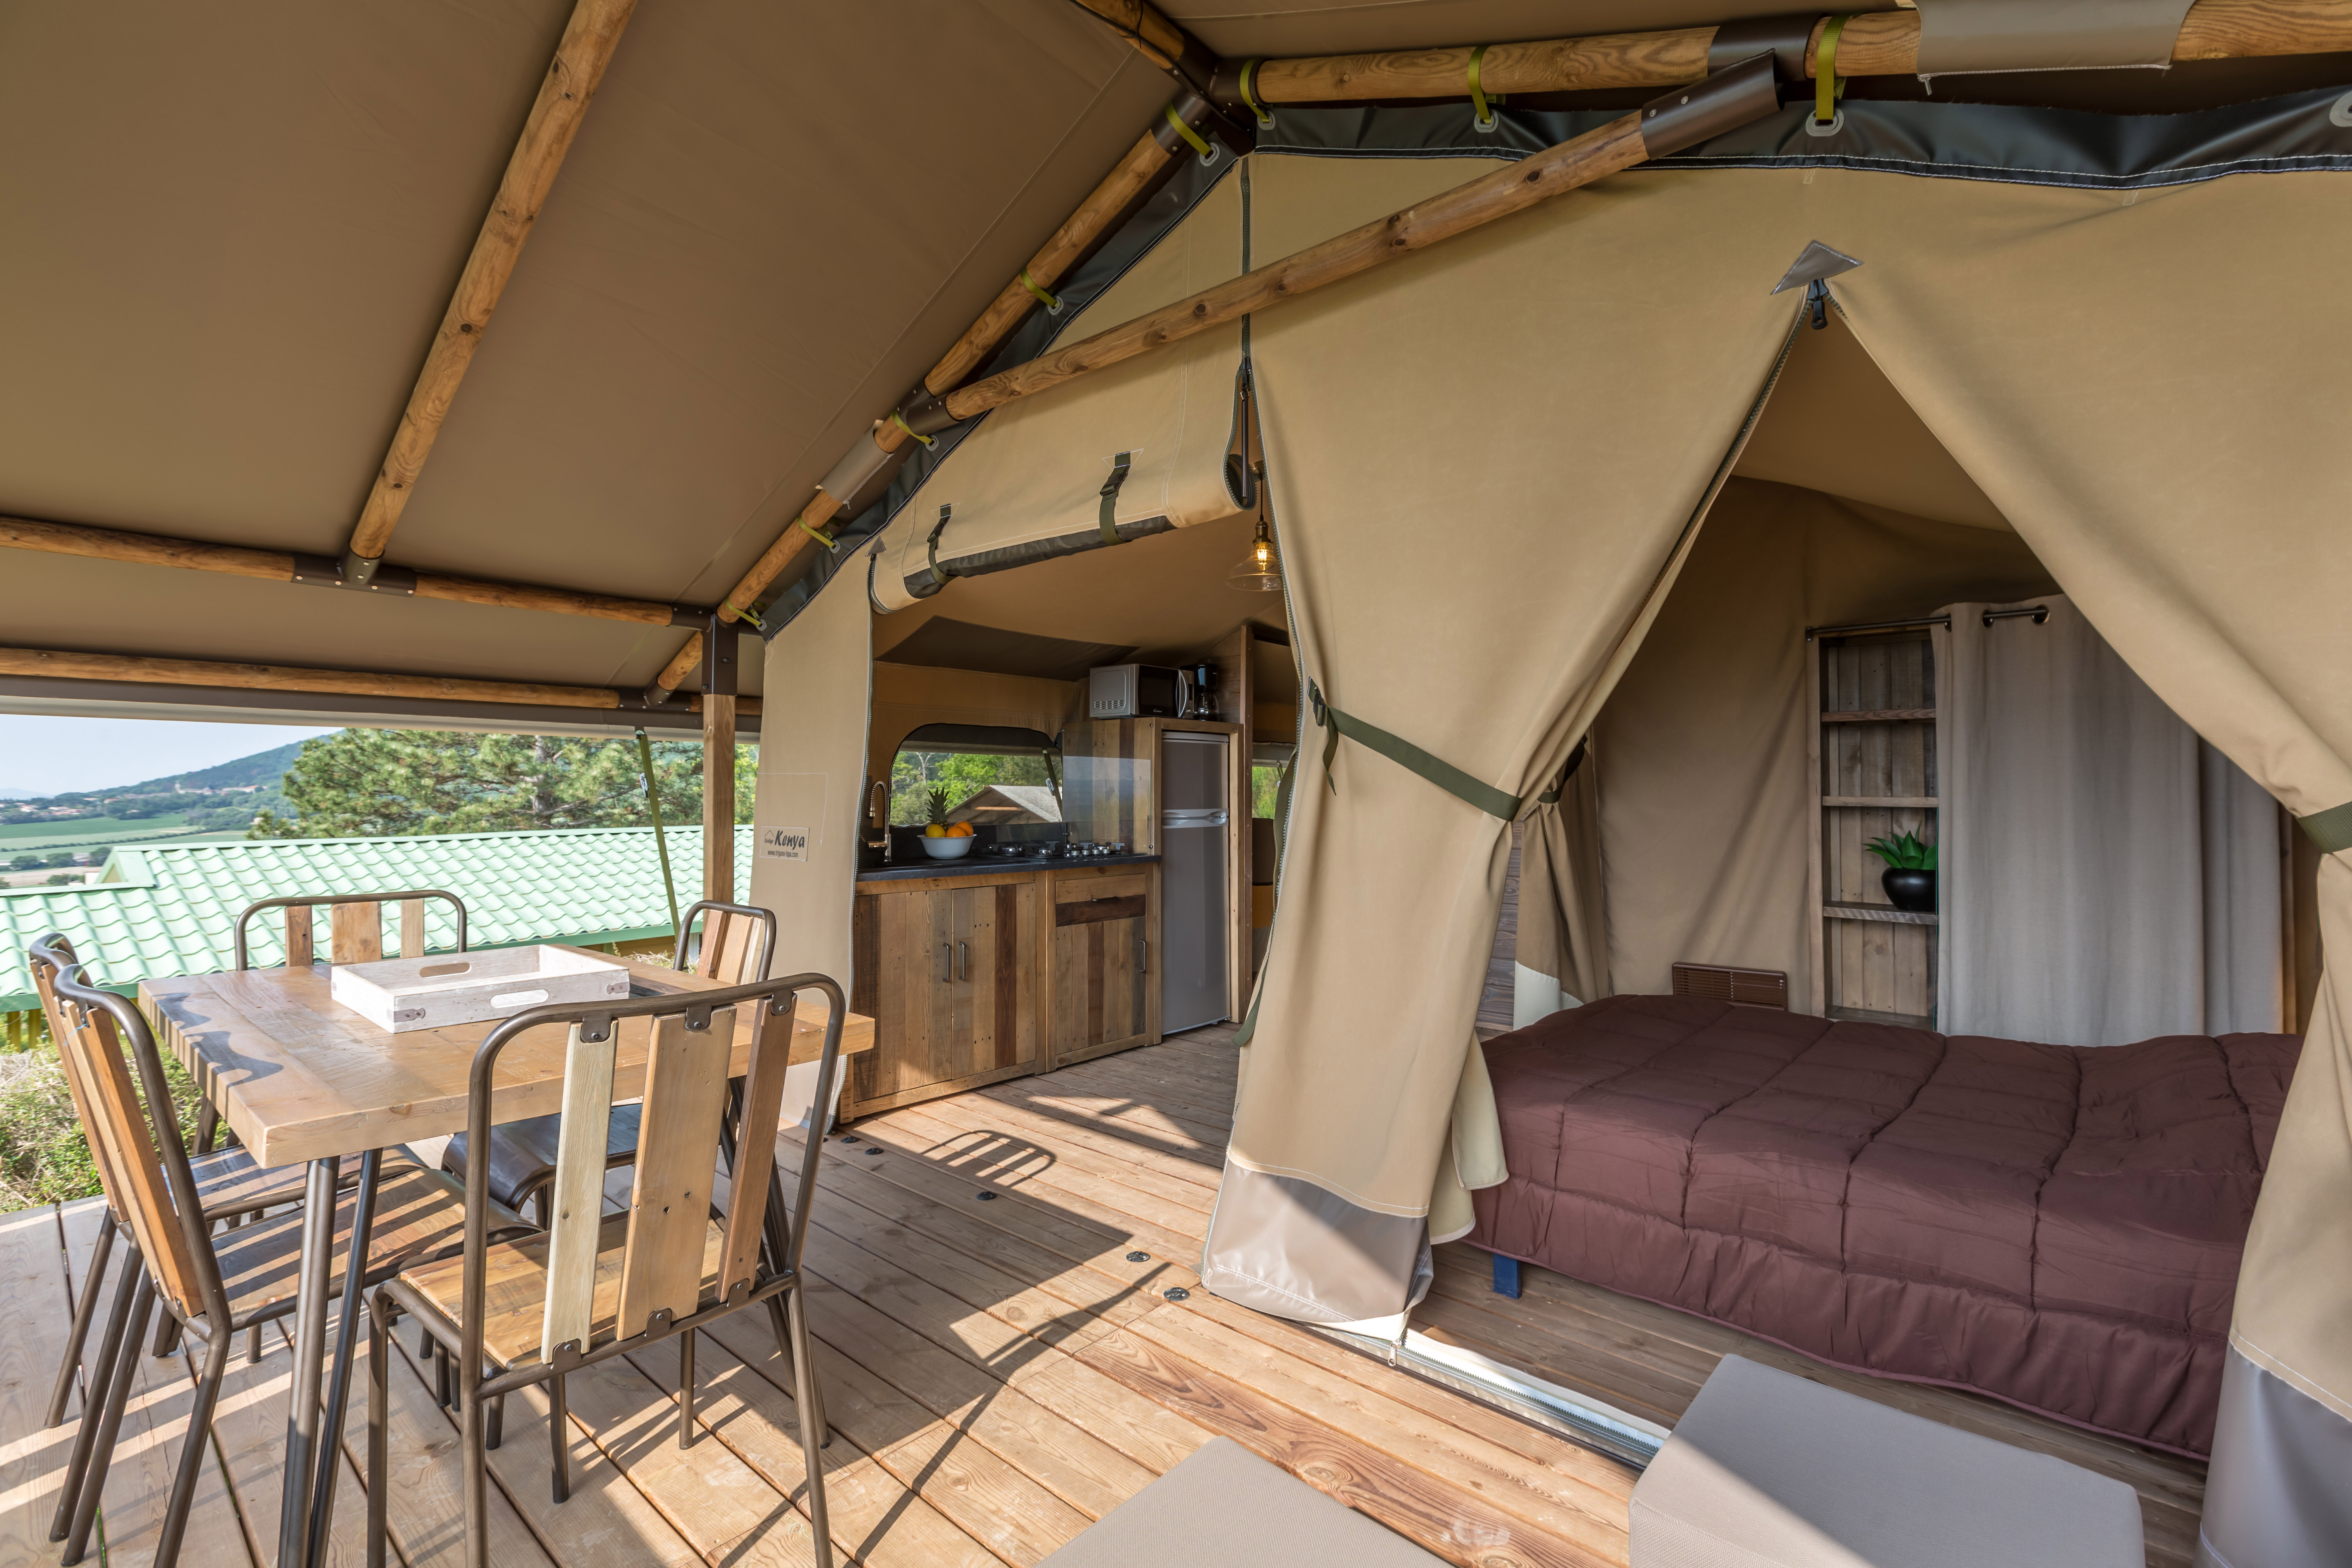 Tente Ecolodge Premium 34m² - 2 chambres - terrasse couverte